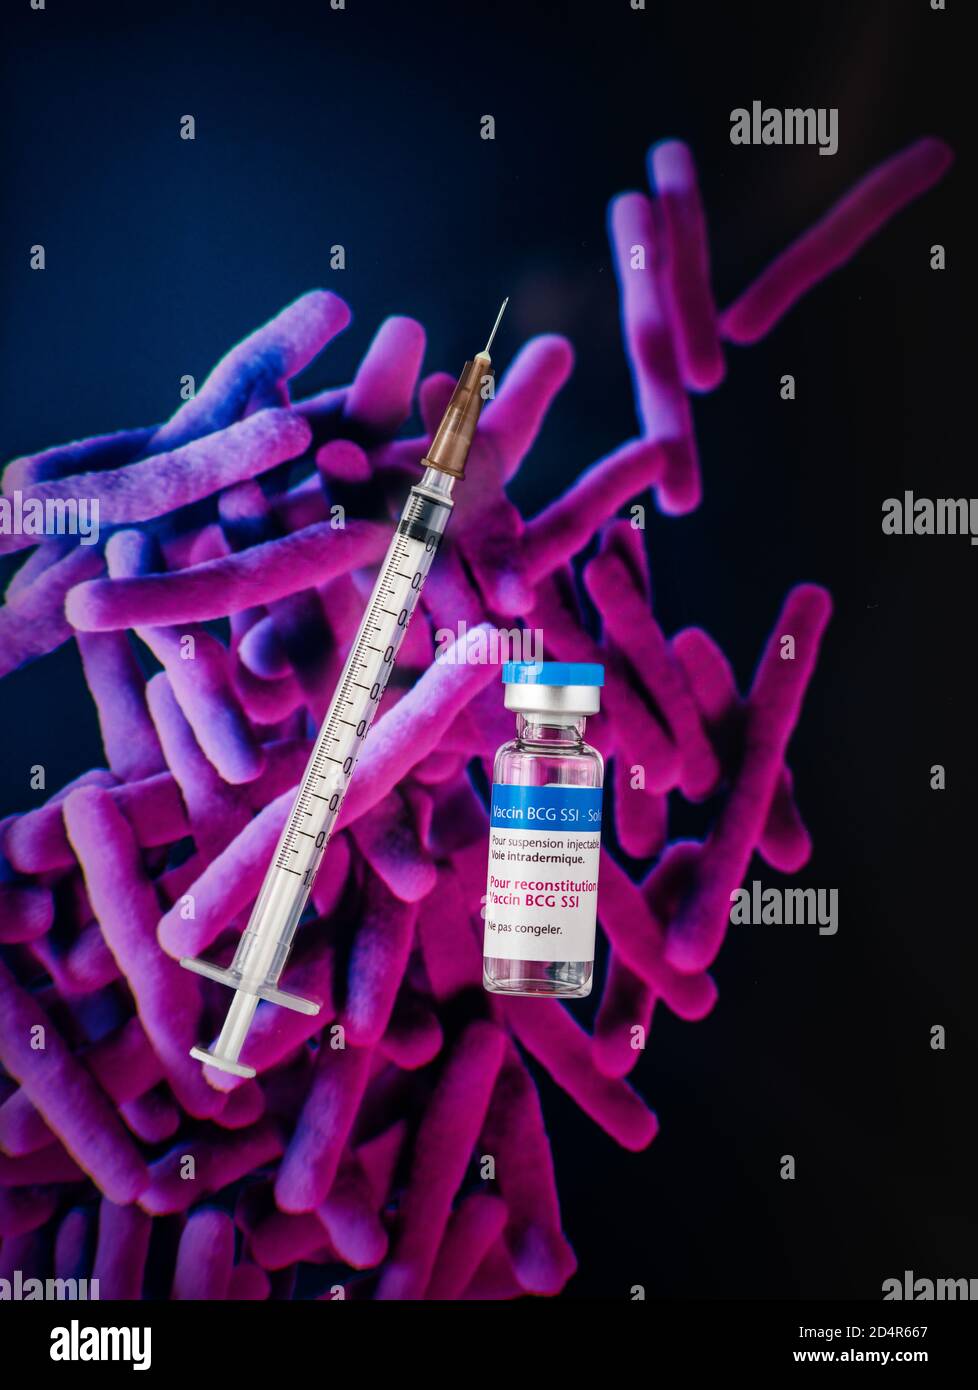 Vaccin antituberculeux BCG SSI sur une image de Mycobacterium tuberculosis, la bactérie responsable de la tuberculose. Banque D'Images